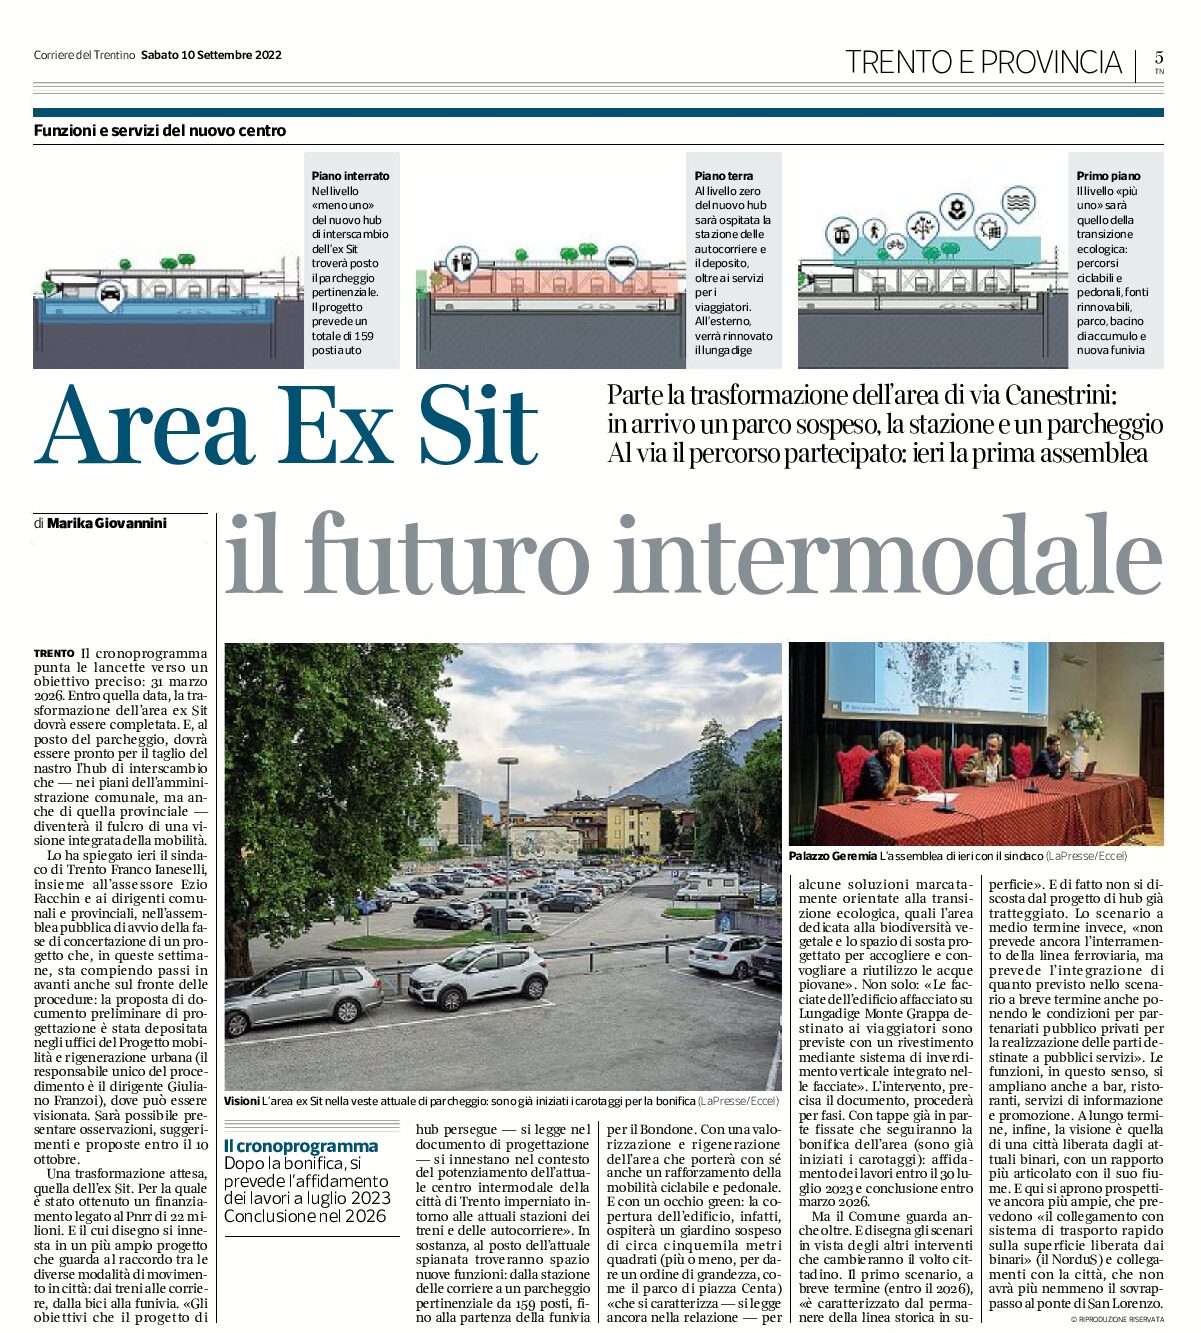 Trento: area ex Sit, il futuro intermodale